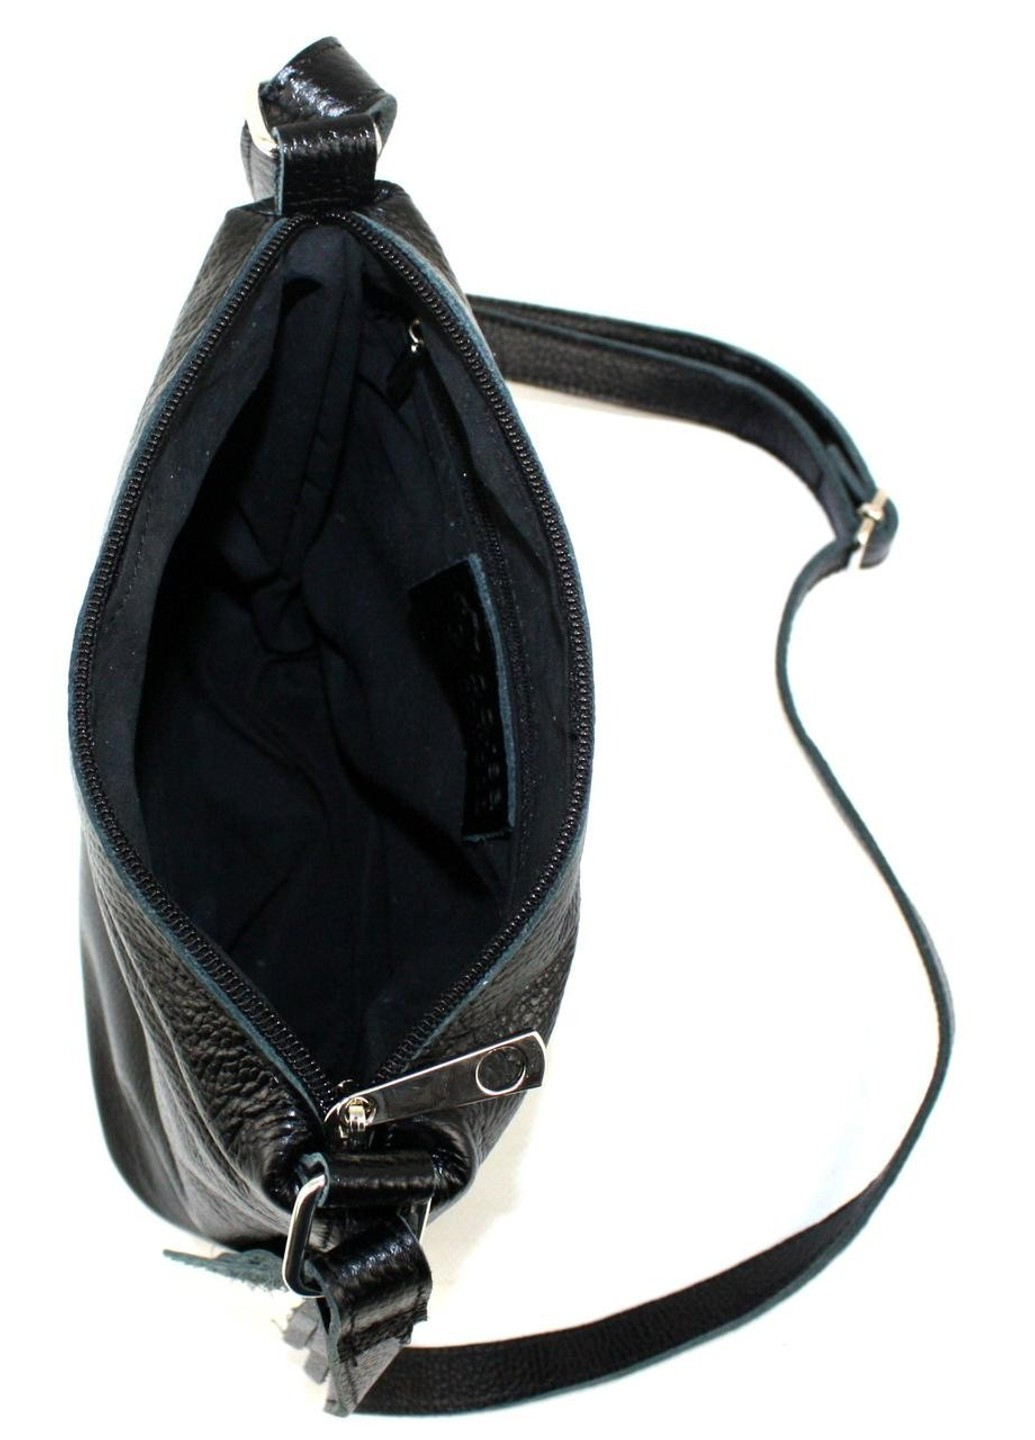 Женская кожаная сумка через плечо черная Borsacomoda (266142888)